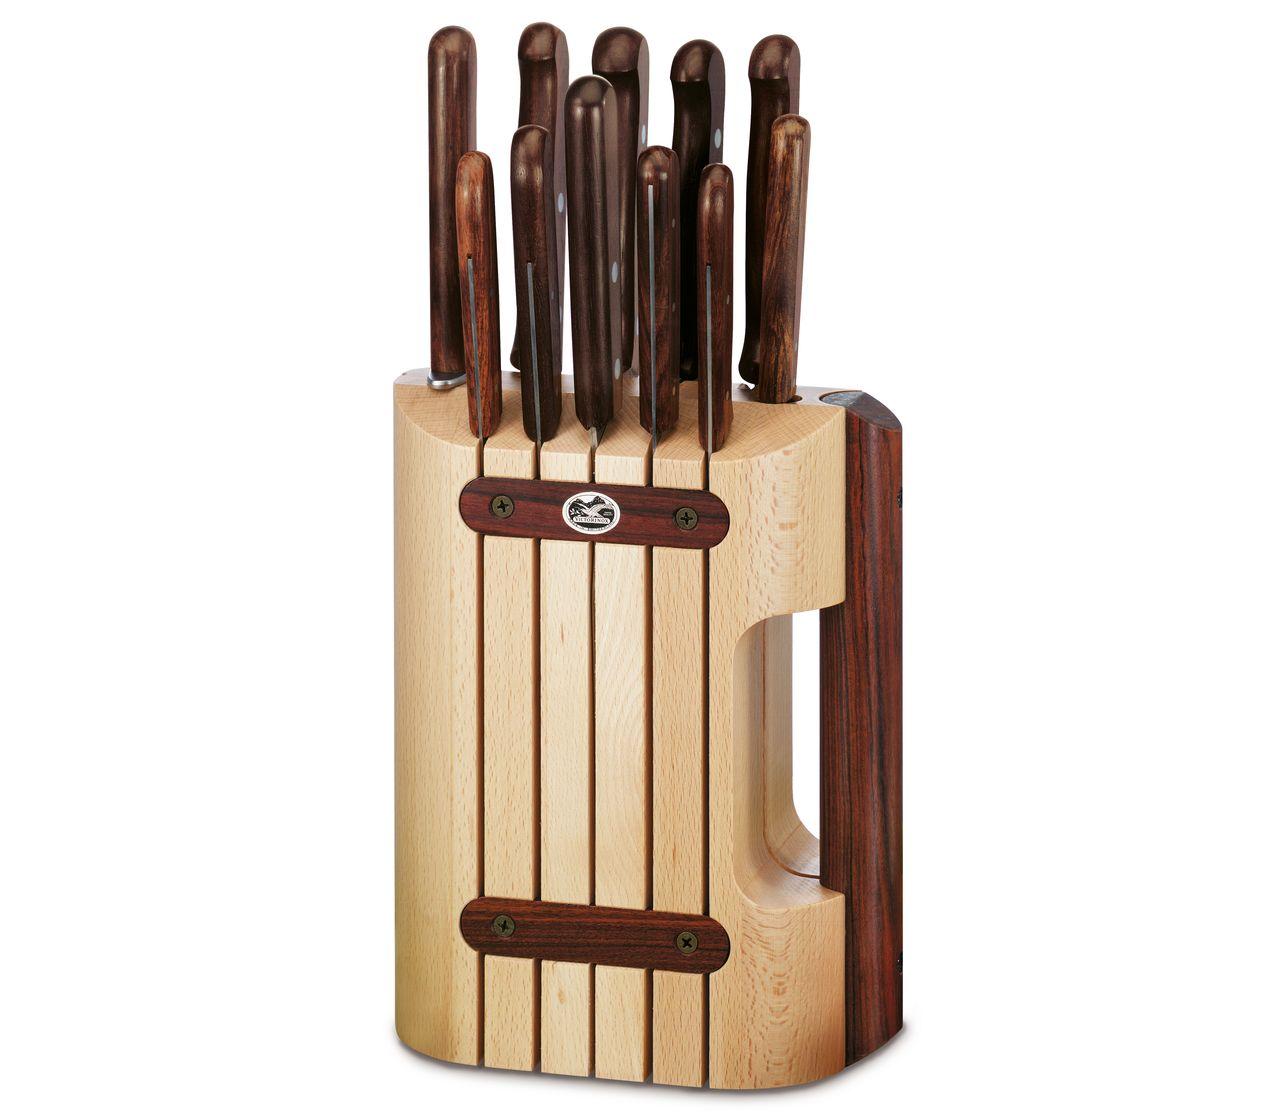 Wood Cutlery Block, 11 pieces-5.1150.11